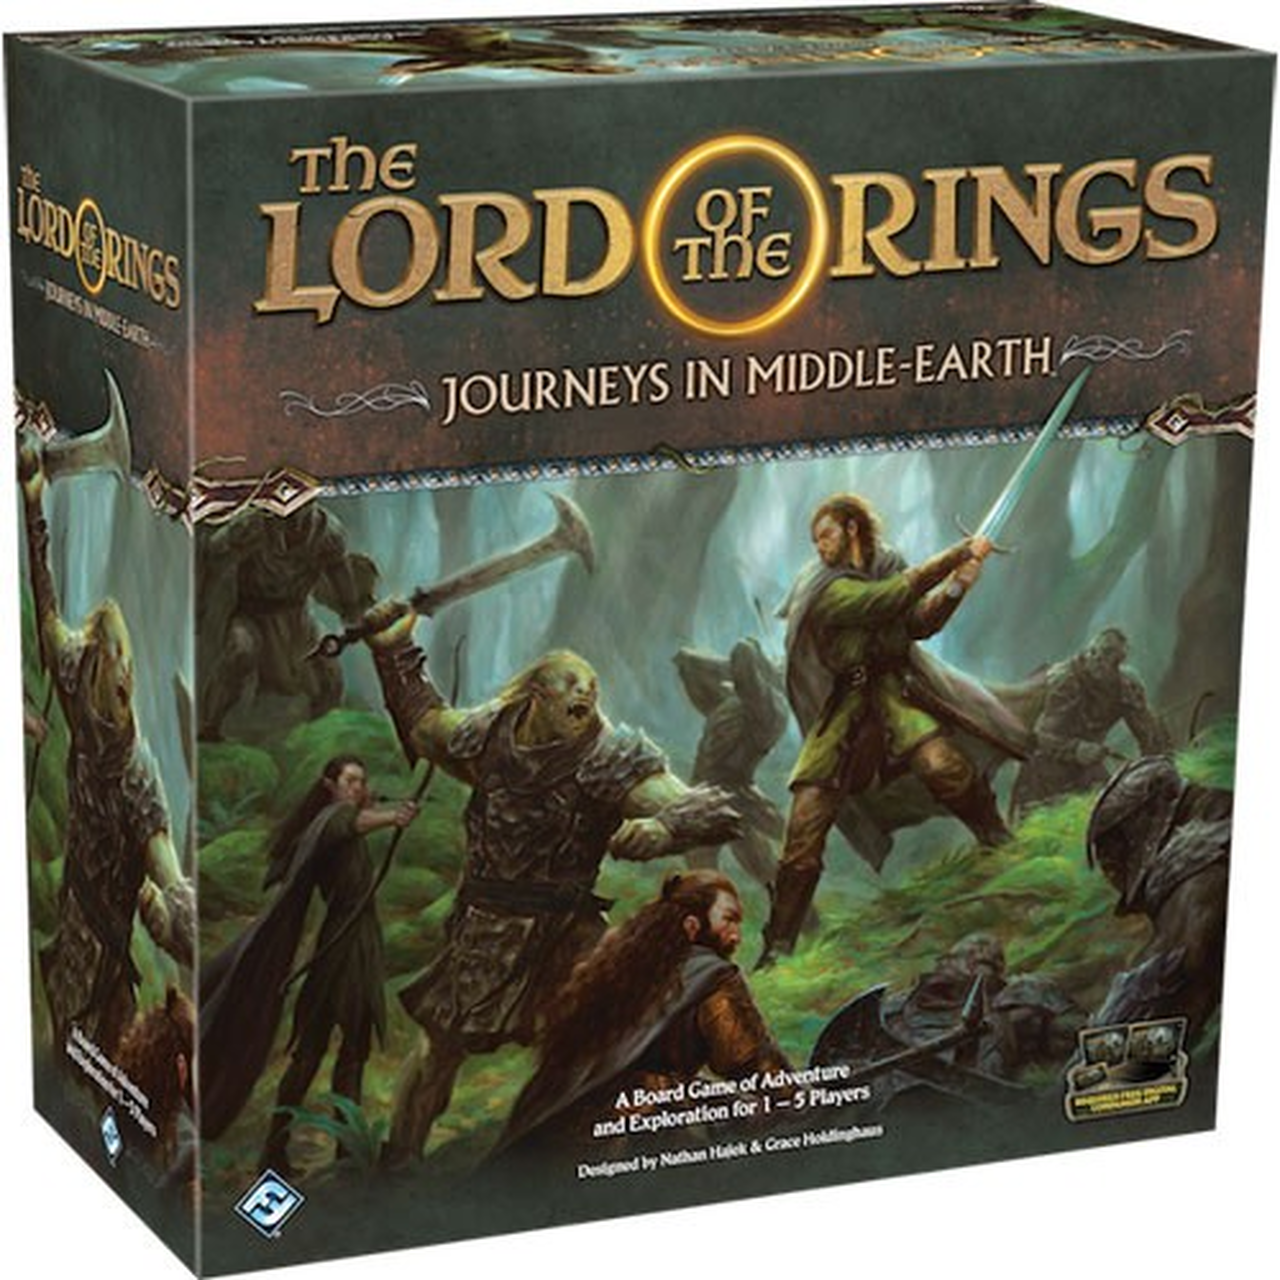 სამაგიდო თამაში ბეჭდების მბრძანებელი მოგზაურობები შუახმელეთში (Lord of the Rings Journeys in Middle Earth) სამაგიდო თამაში